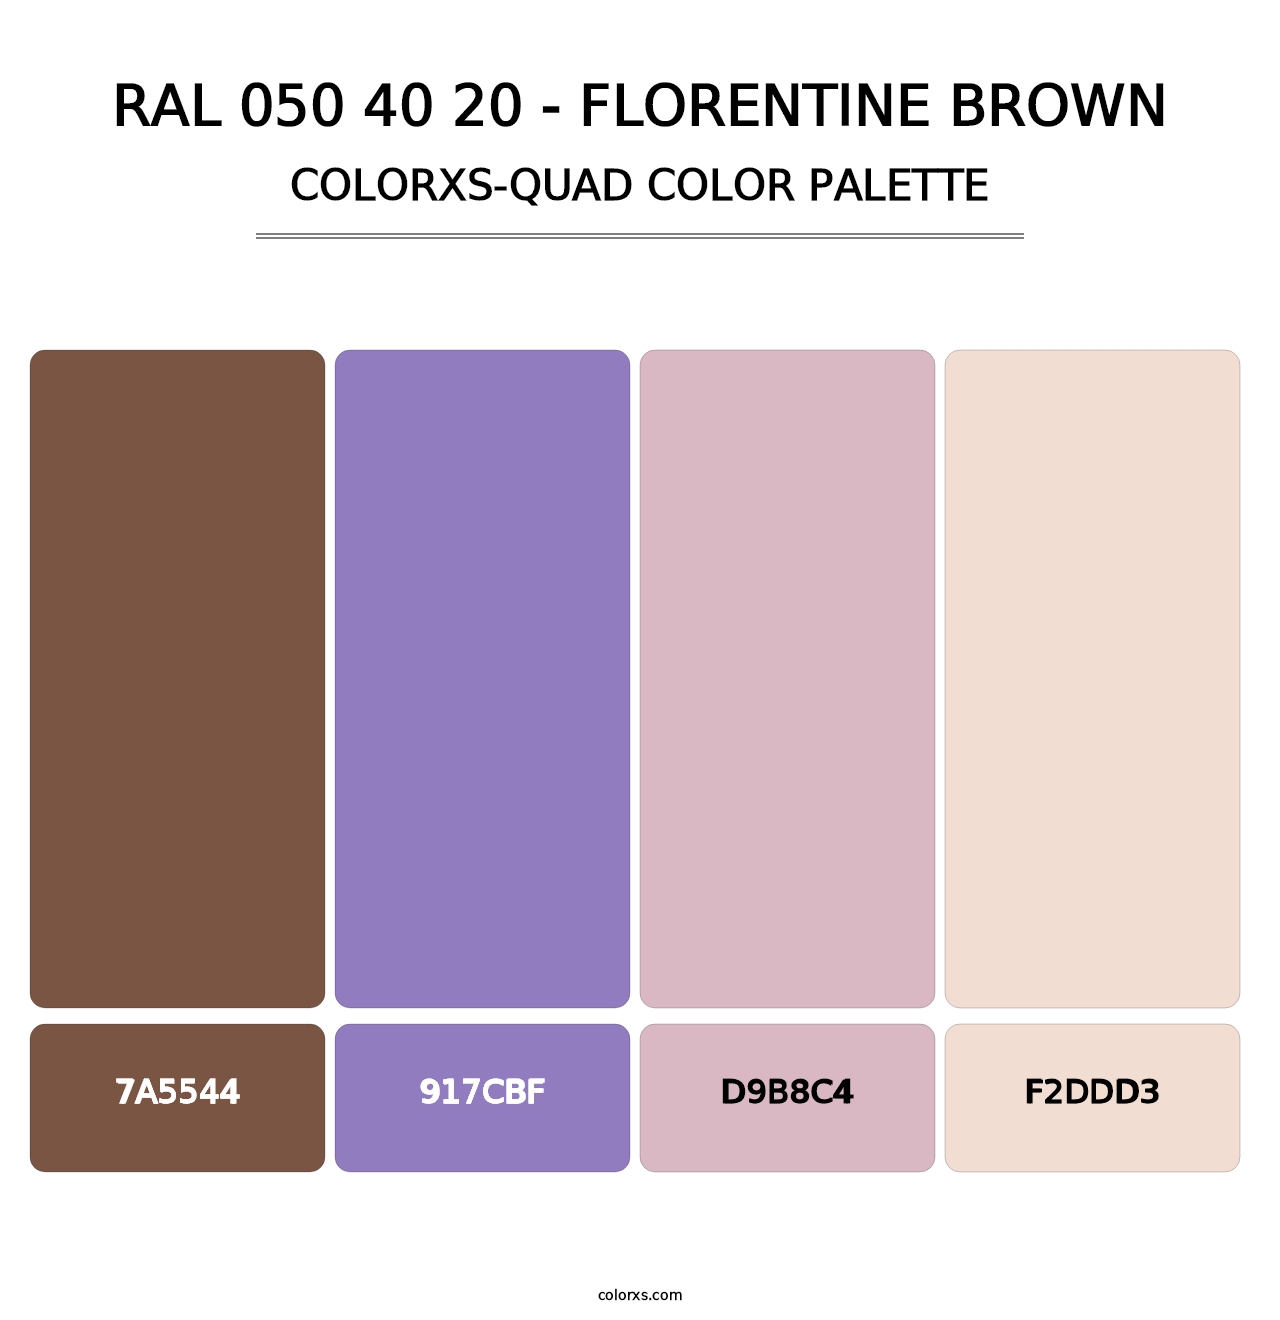 RAL 050 40 20 - Florentine Brown - Colorxs Quad Palette